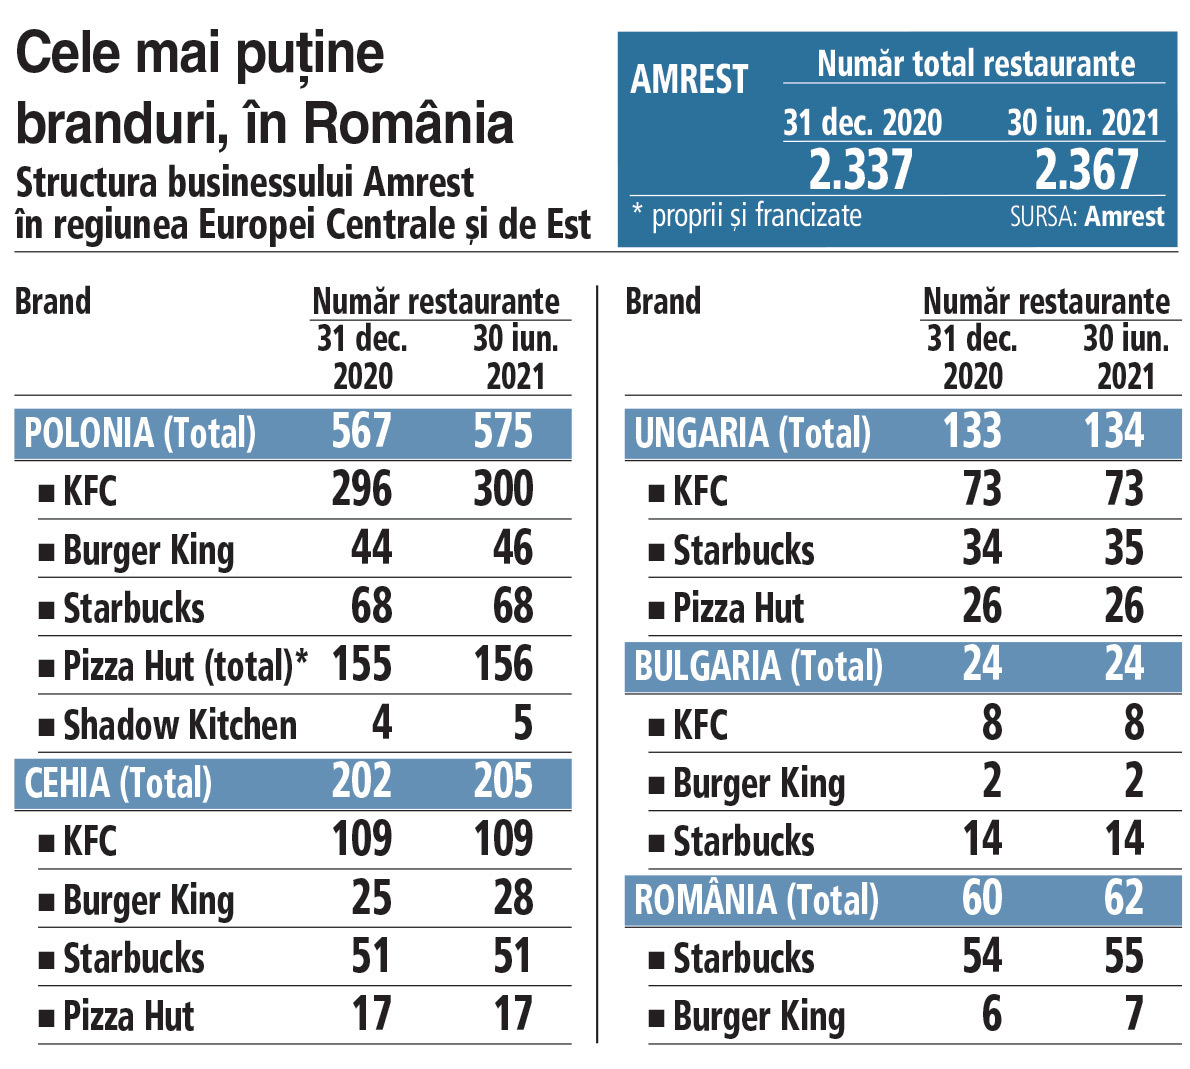 Grupul polonez Amrest şi-a extins reţeaua cu 30 de restaurante şi cafenele în S1 2021, dintre care două în România, un Starbucks şi un Burger King. Compania e prezentă pe mai mult de 25 de pieţe din lume, cele mai multe din Europa